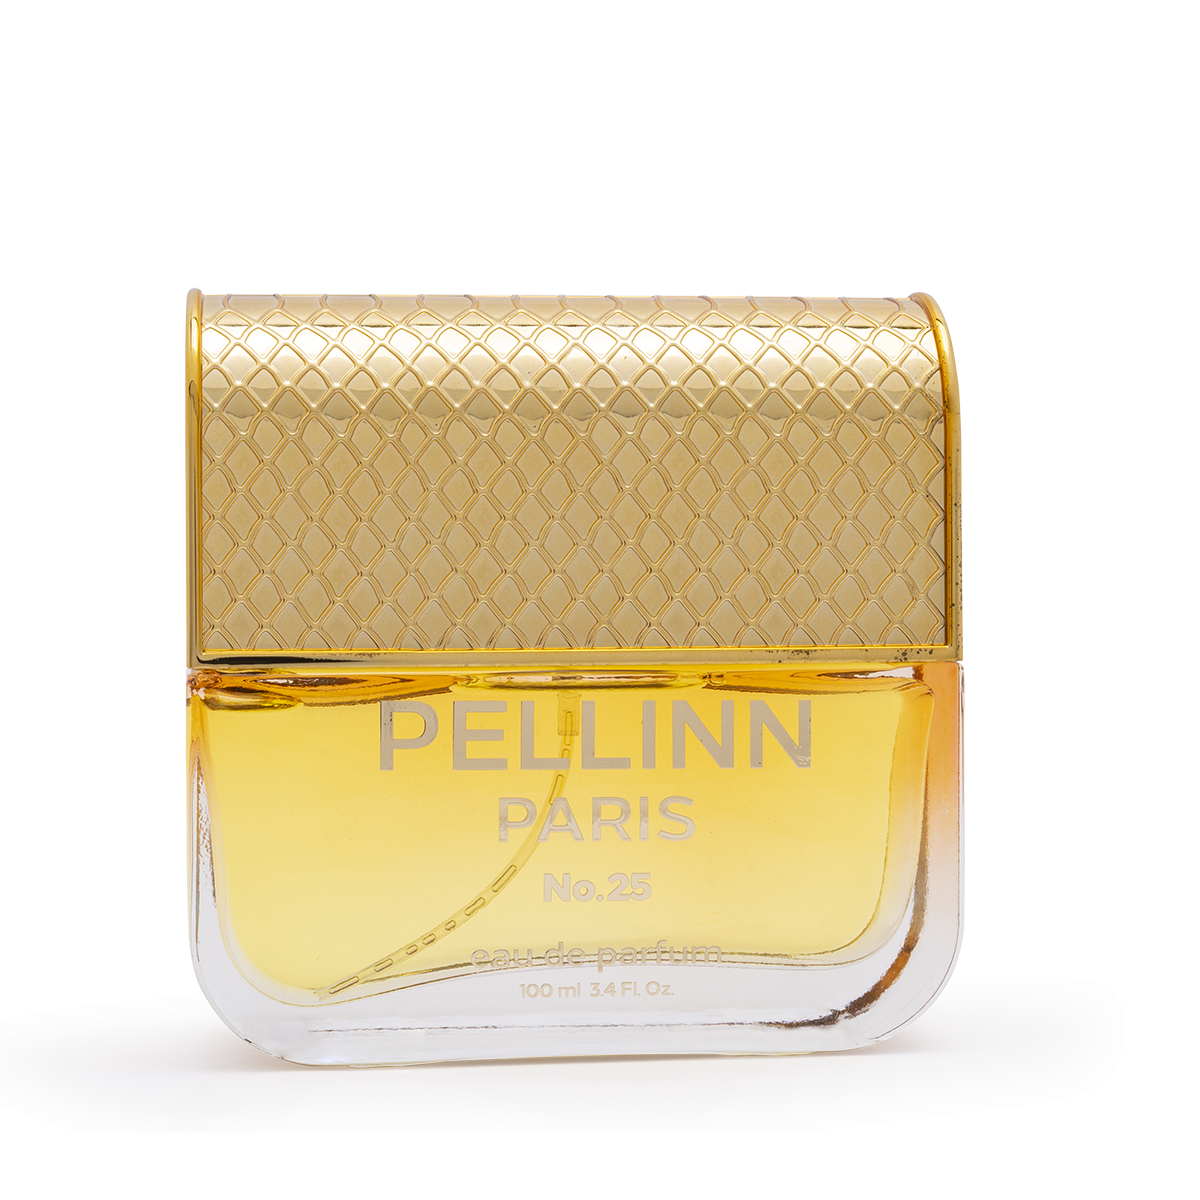 Pellinn Paris No.25 EDP 100 ml  Pellinn Paris Parfüm